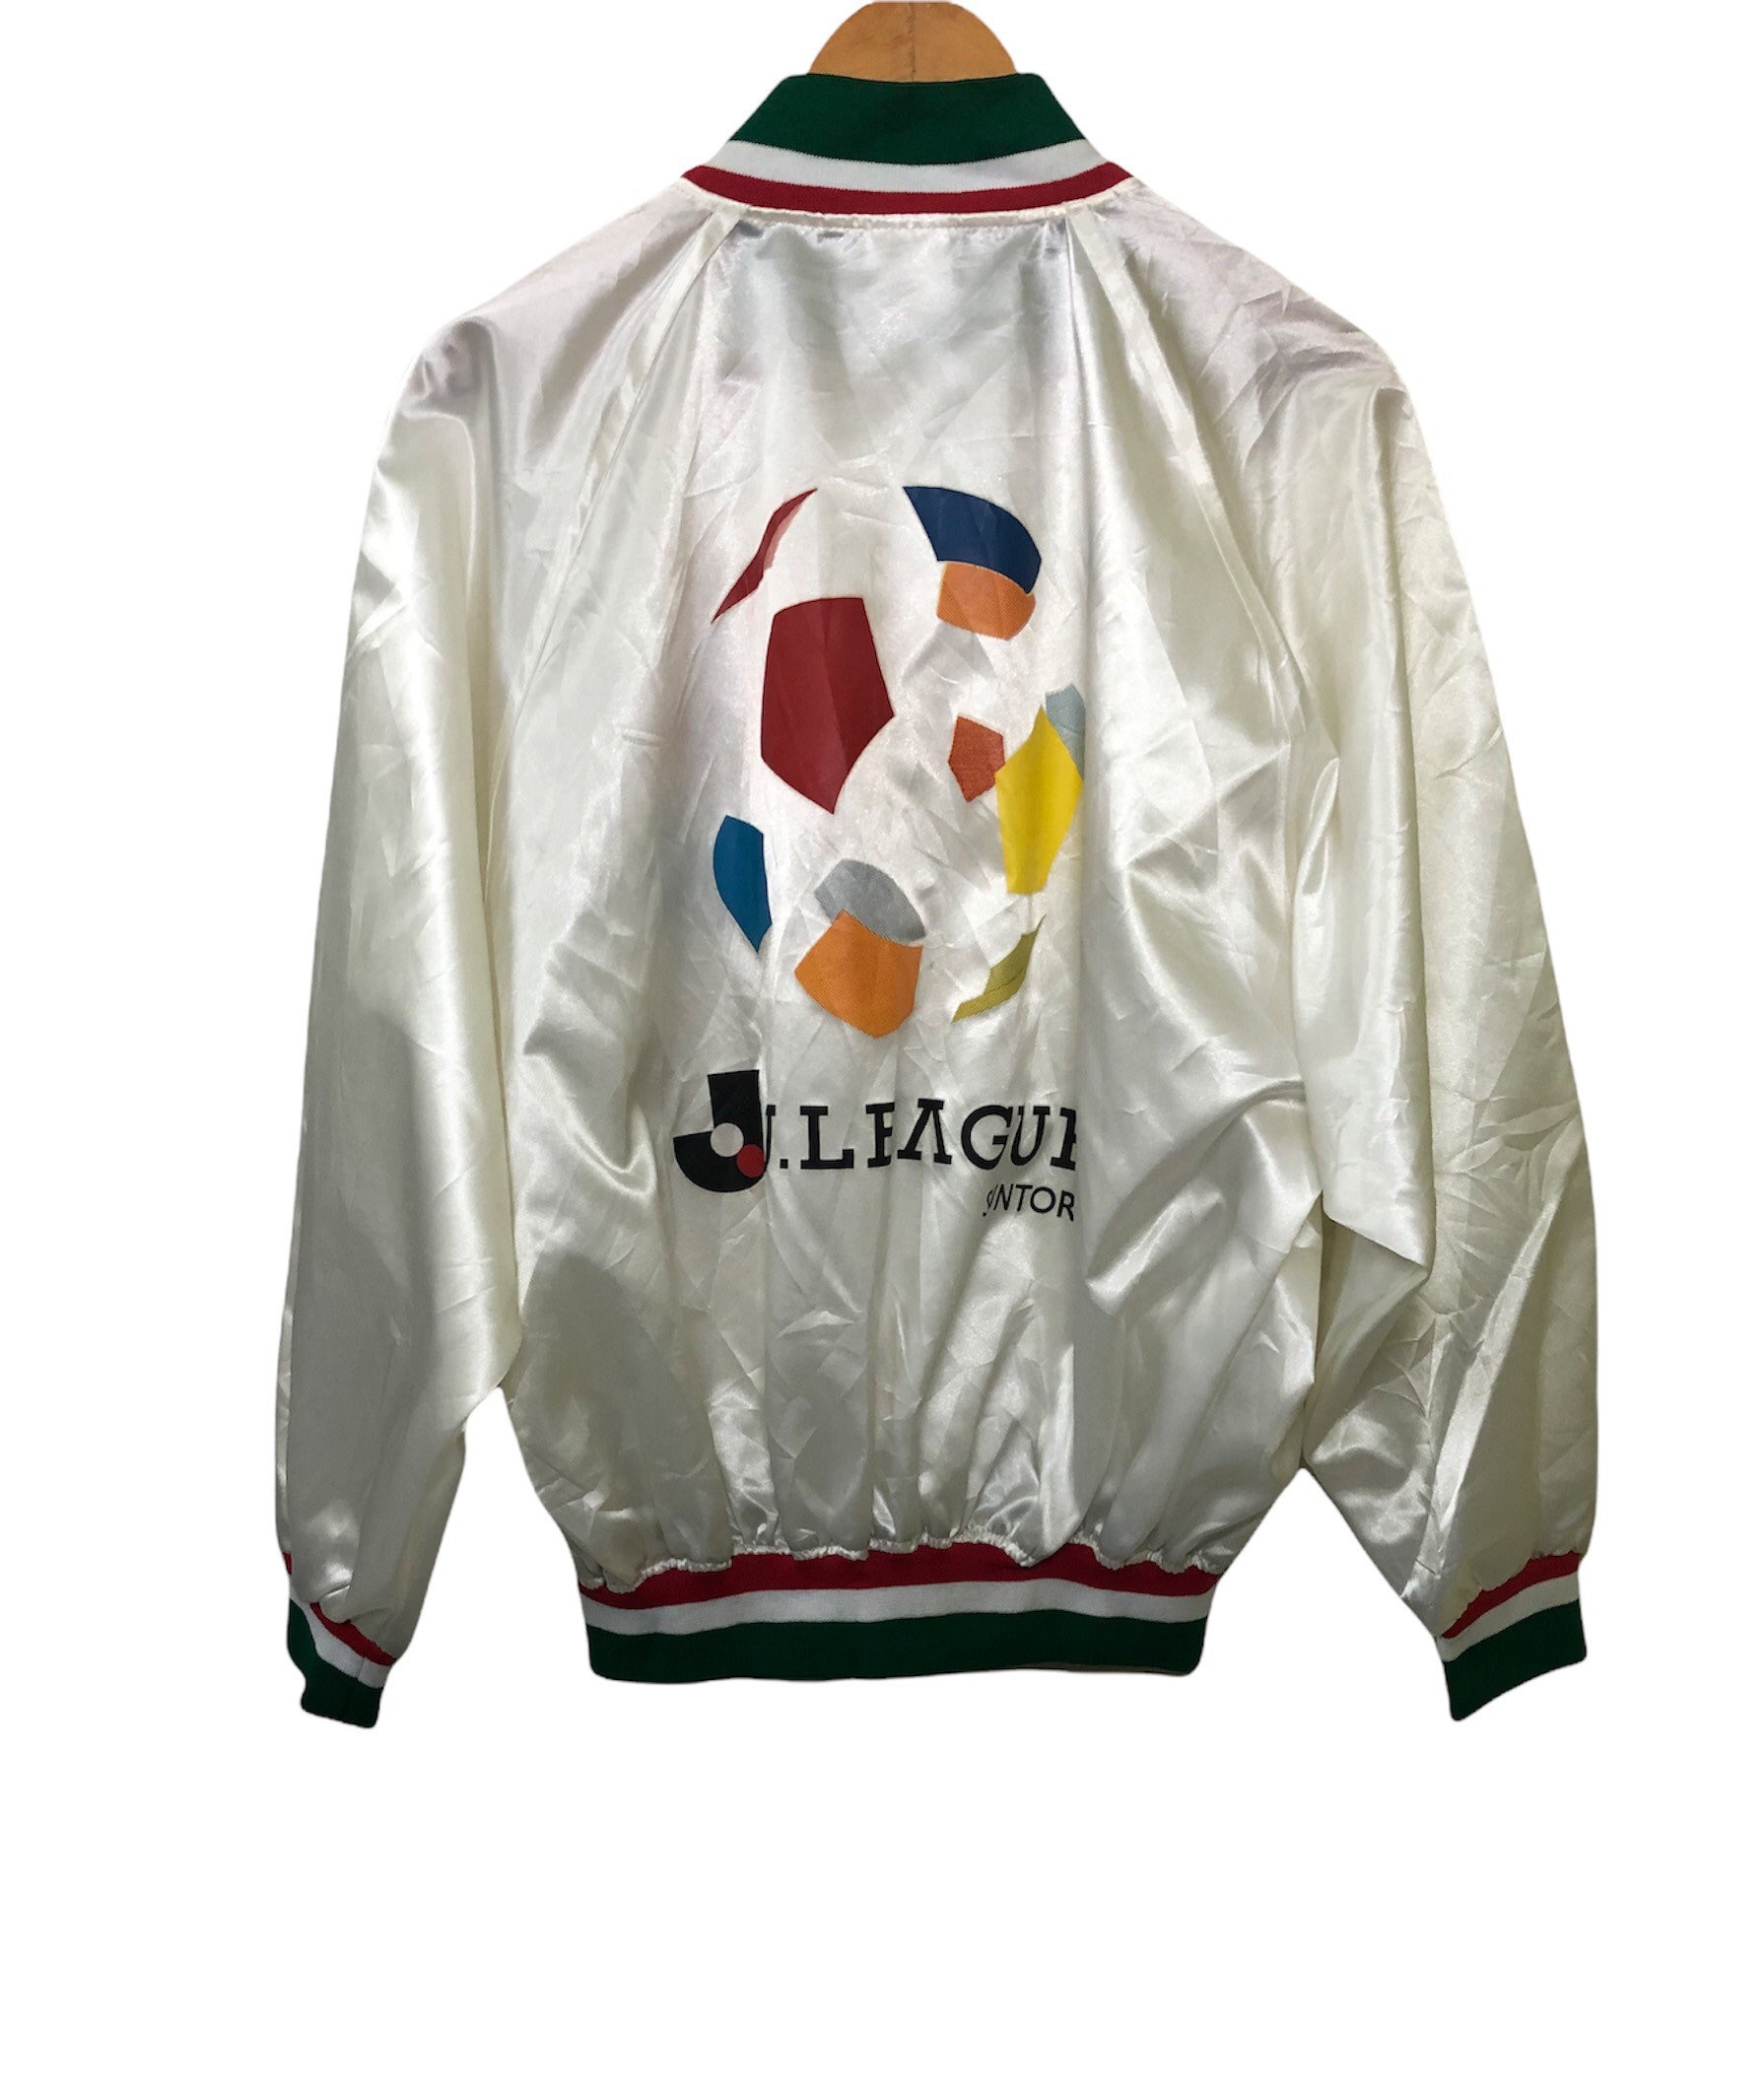 VTG Mizuno J league jacket XL